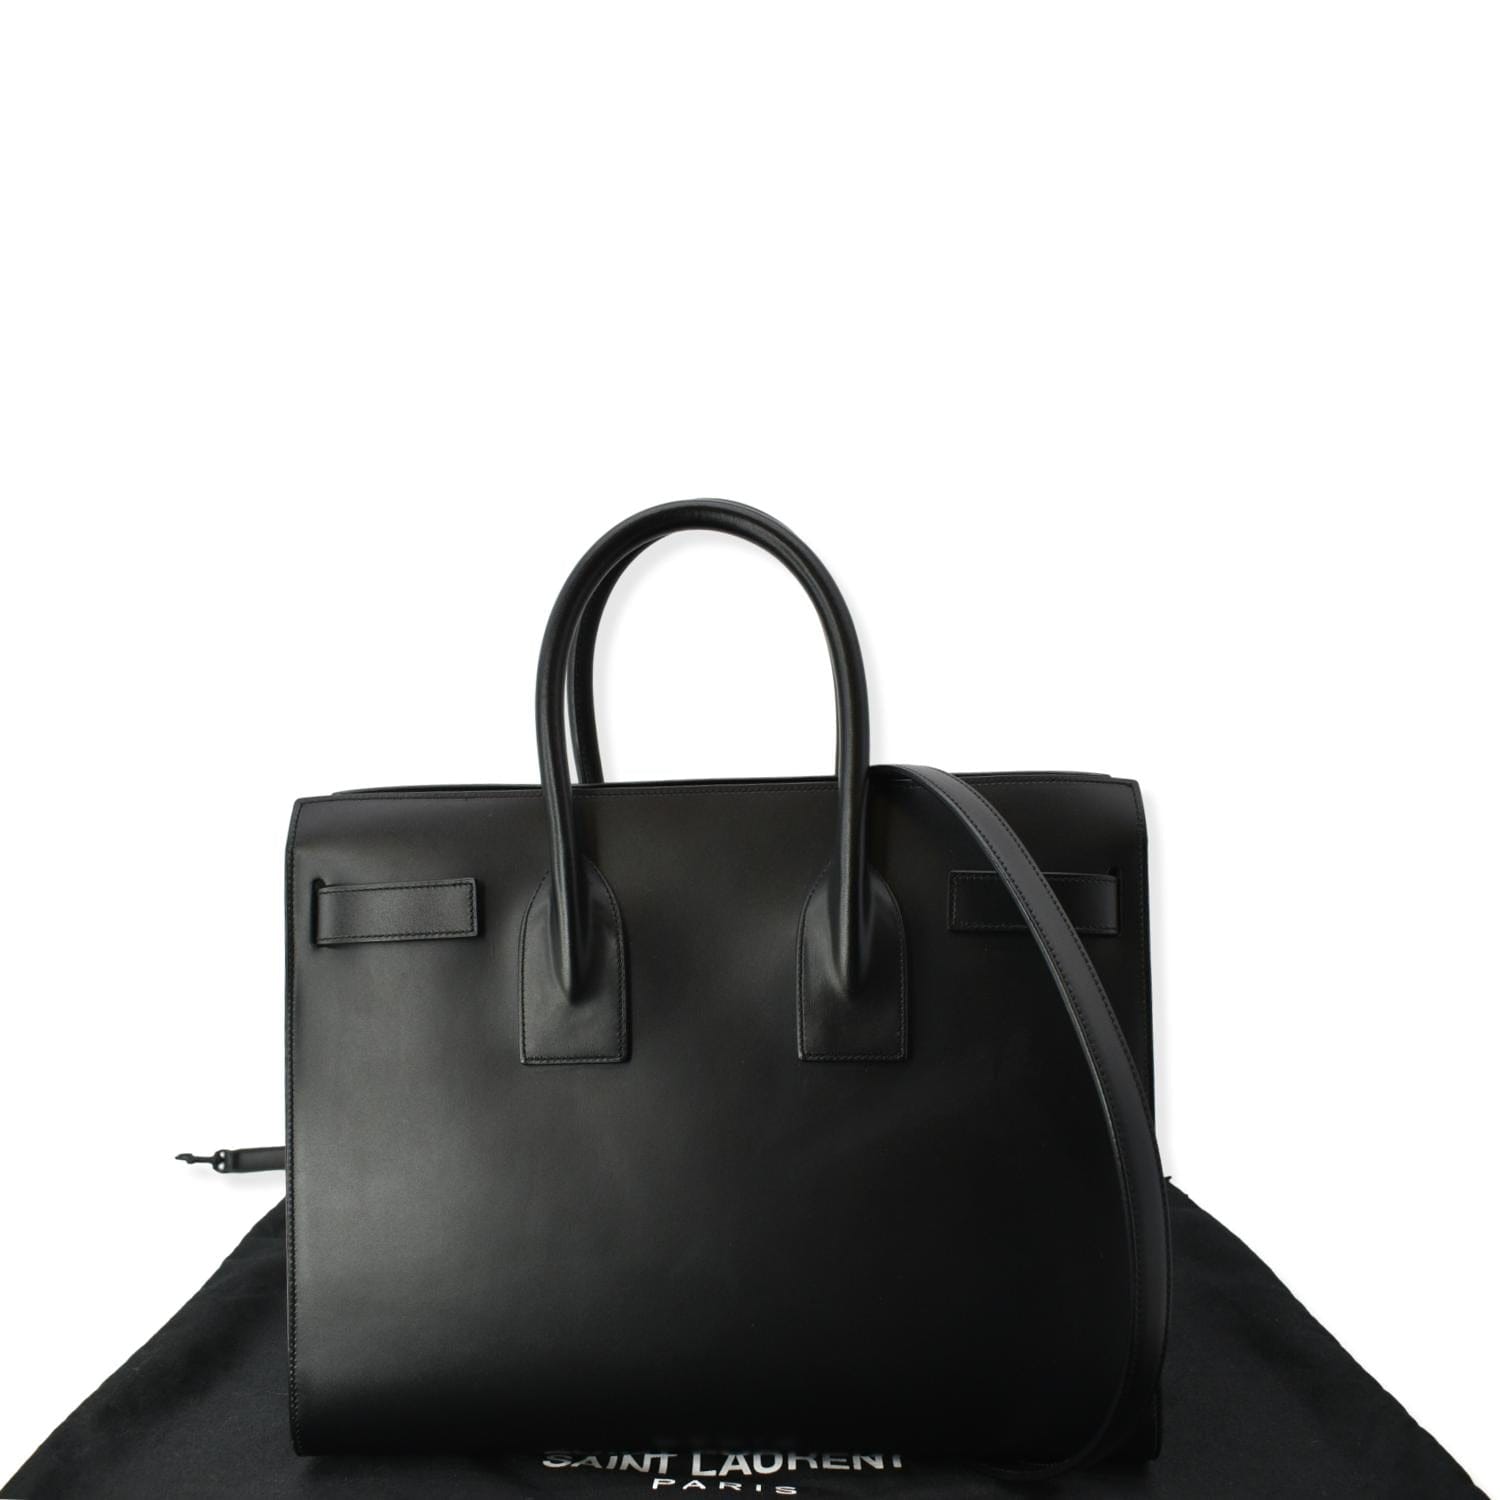 Yves Saint Laurent Sac de Jour Leather Shoulder Bag Black